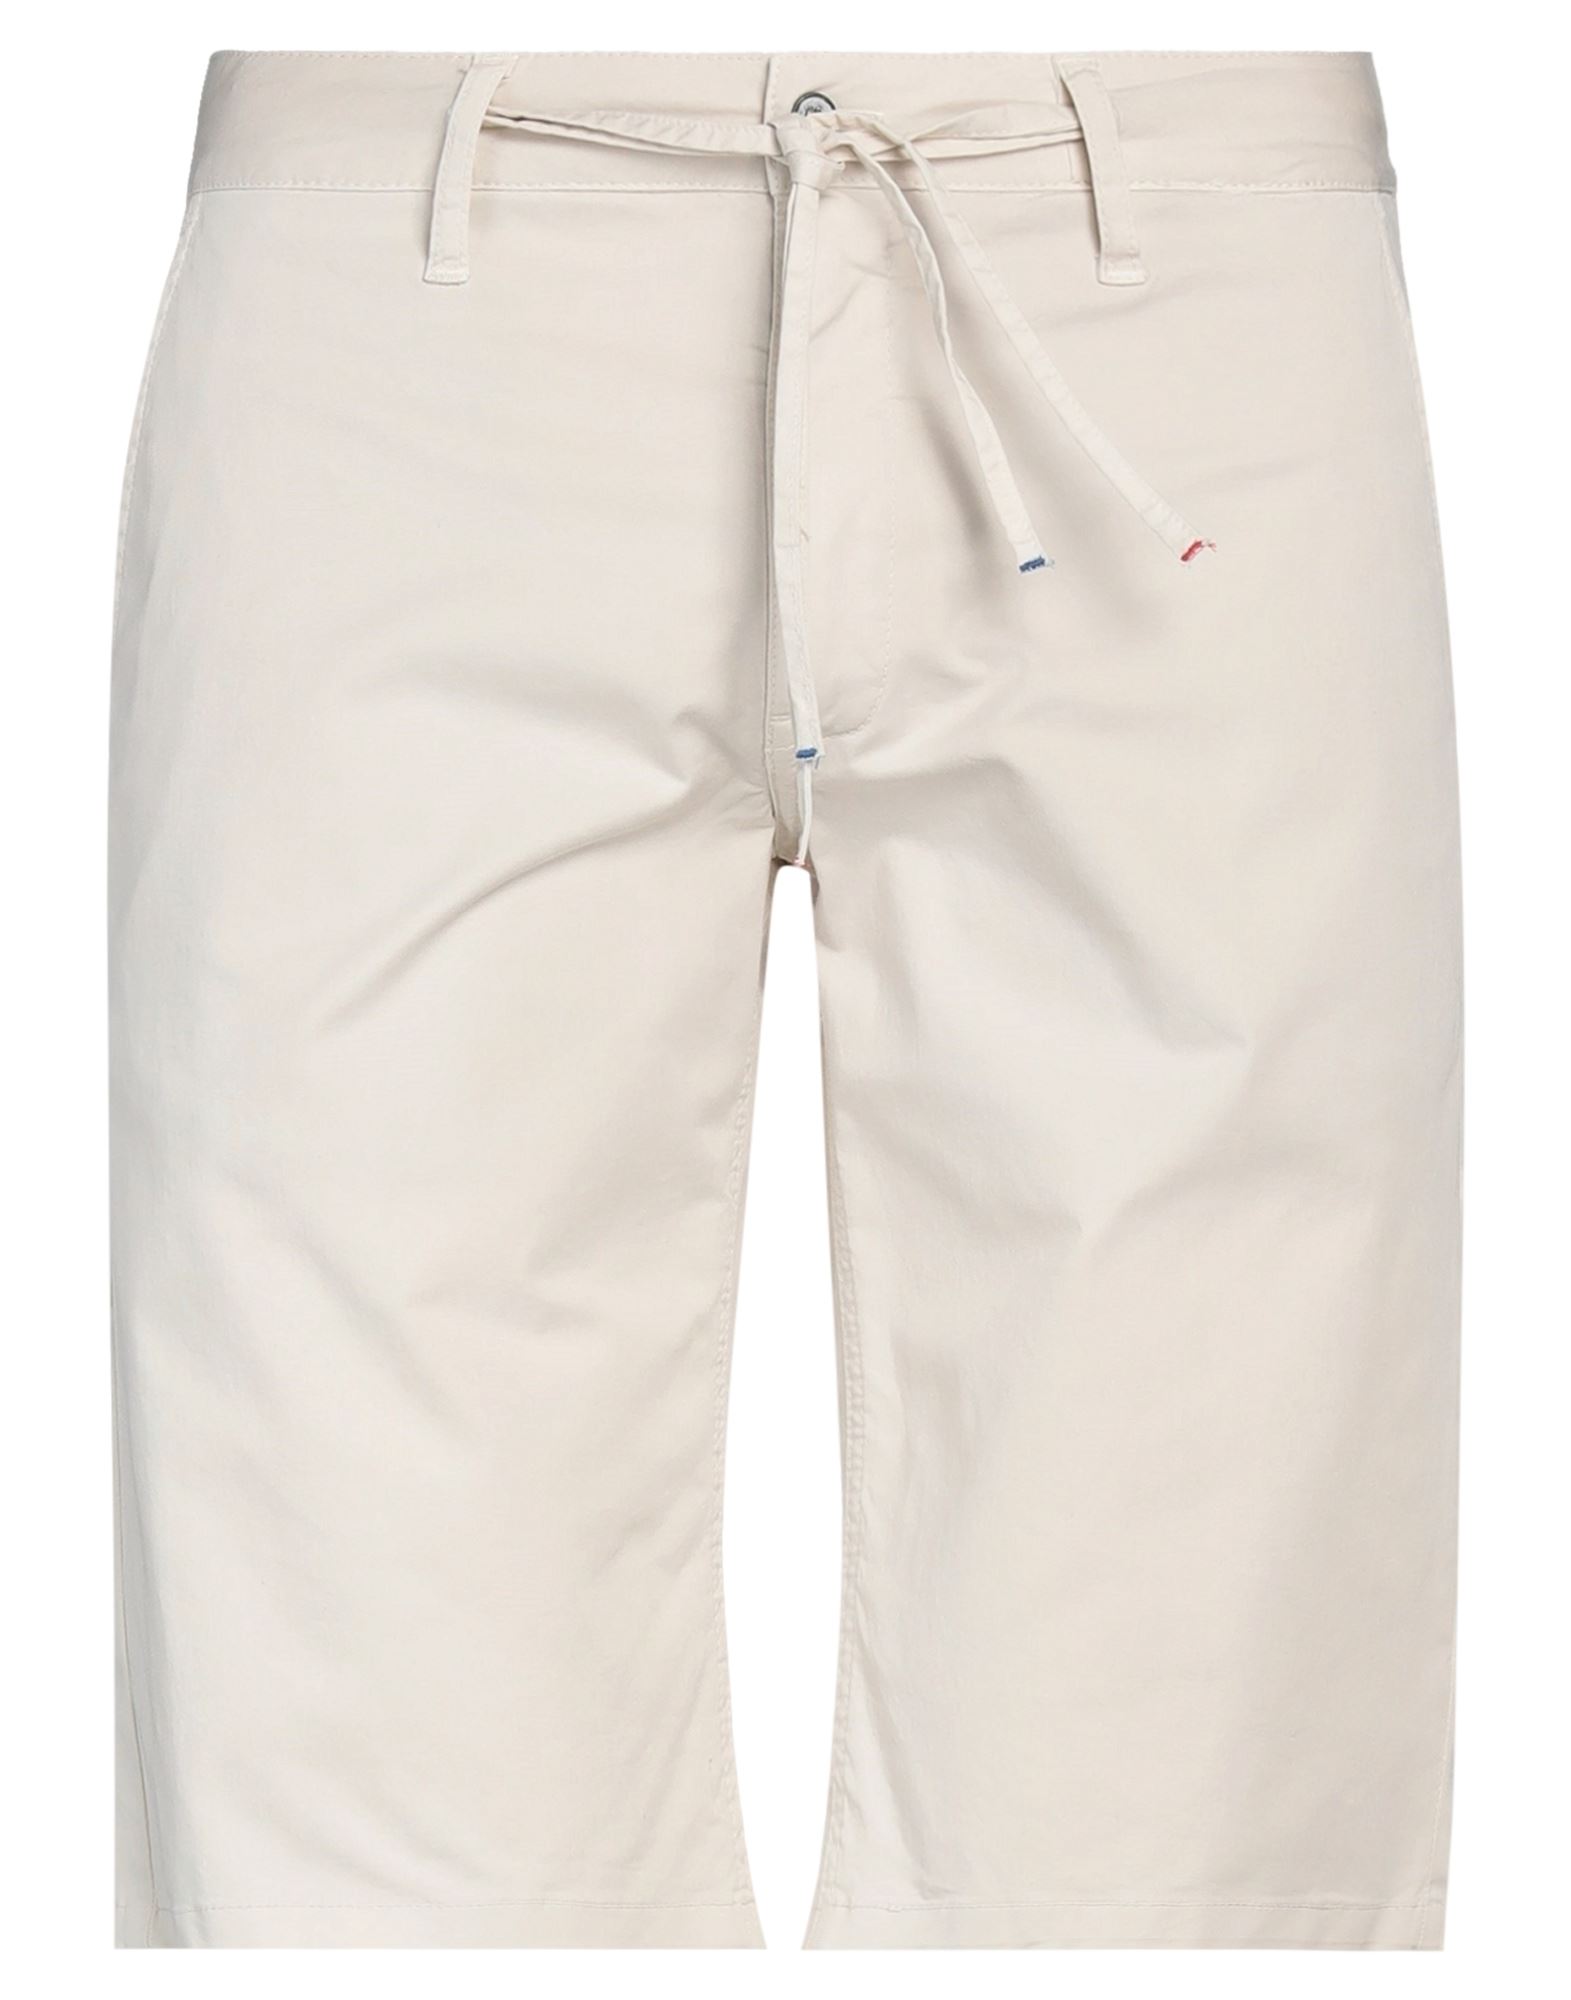 Grey Daniele Alessandrini Man Shorts & Bermuda Shorts Beige Size 34 Cotton, Elastane